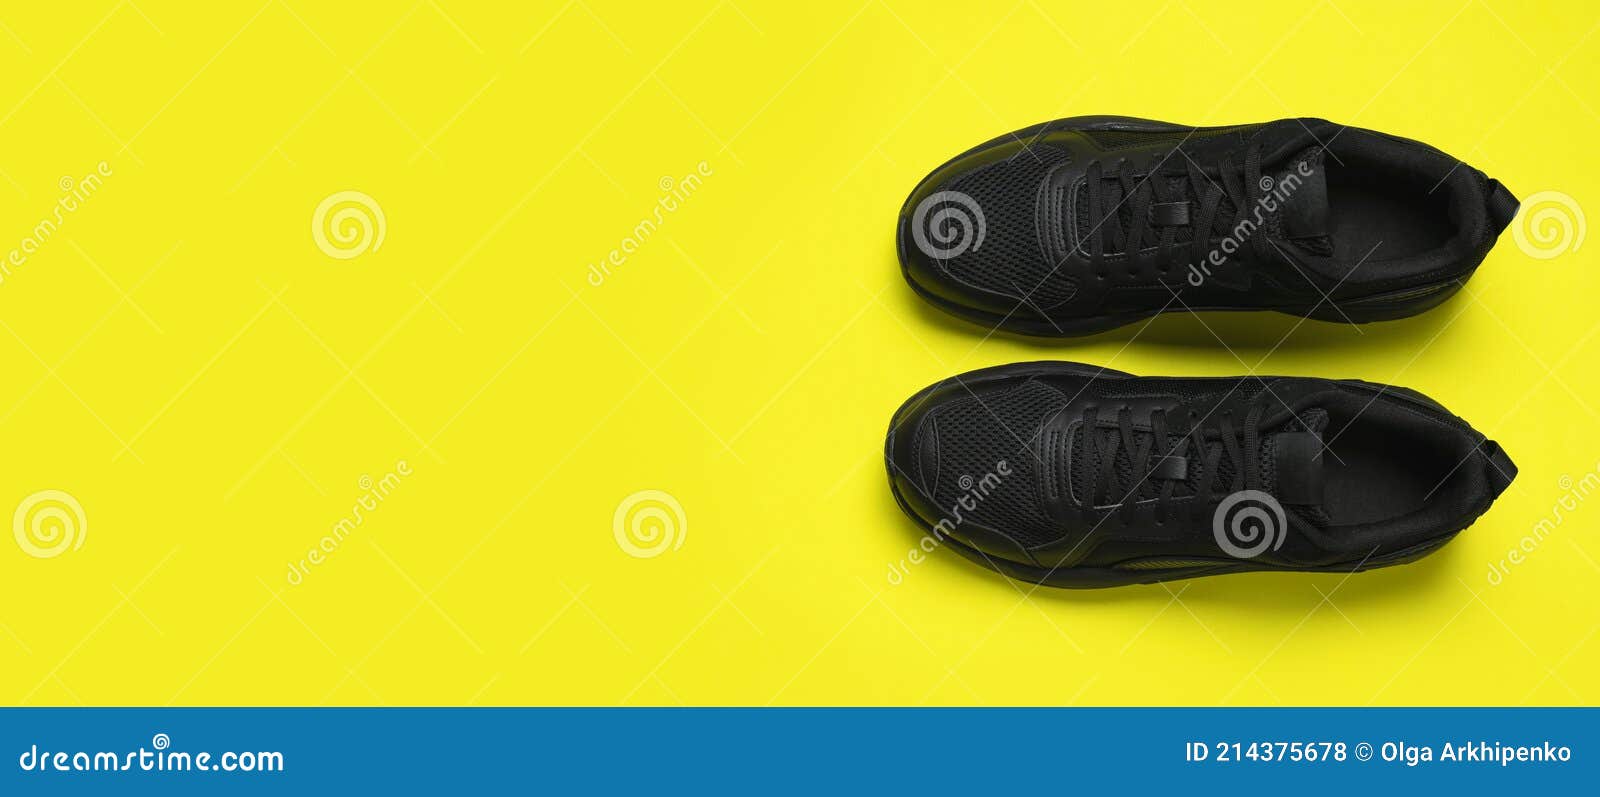 Zapatillas deportivas hombre color negro